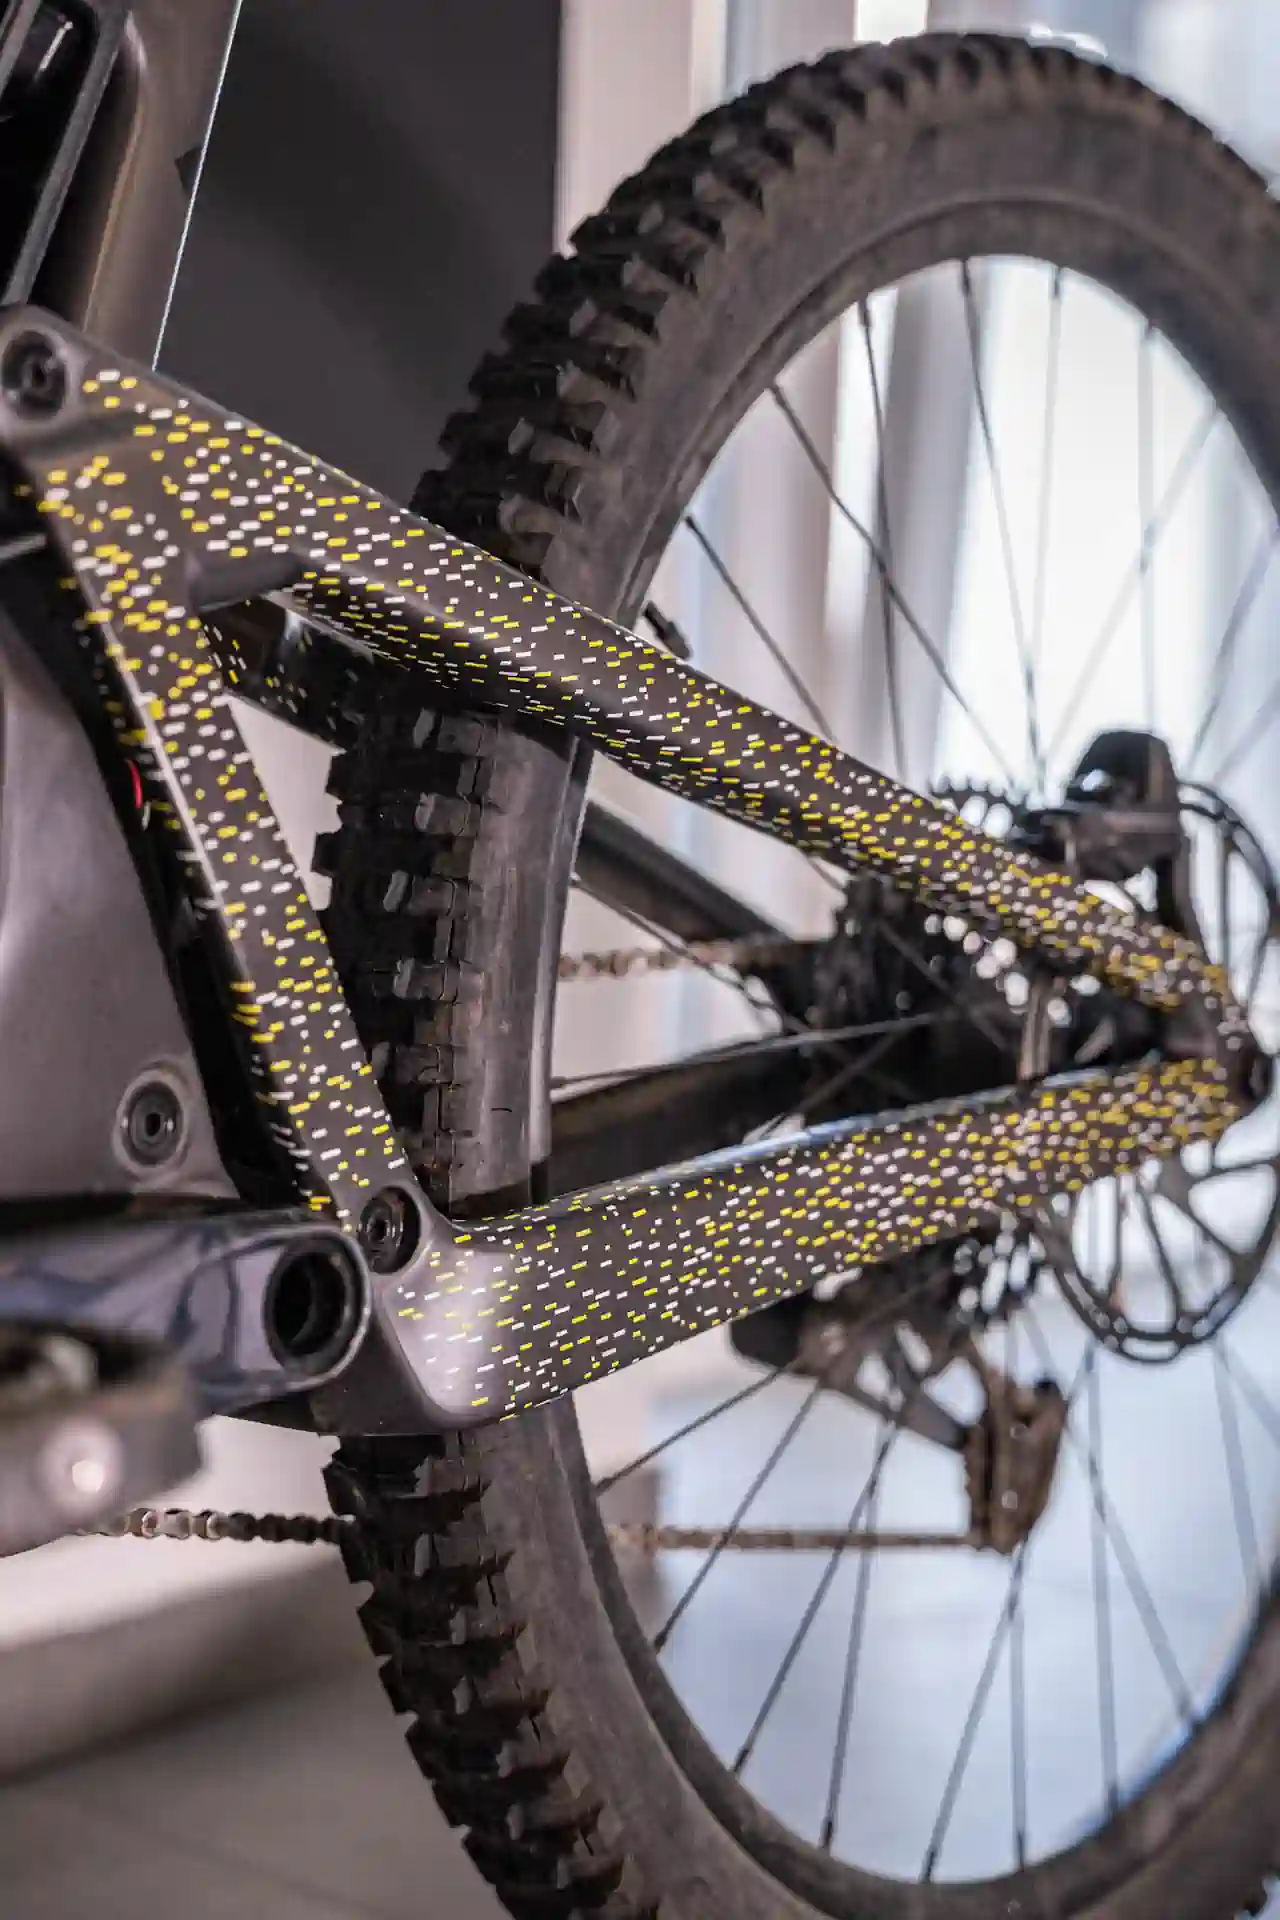 Zbliżenie na tylną część ramy roweru z żółtymi i białymi kropkami na folii ochronnej